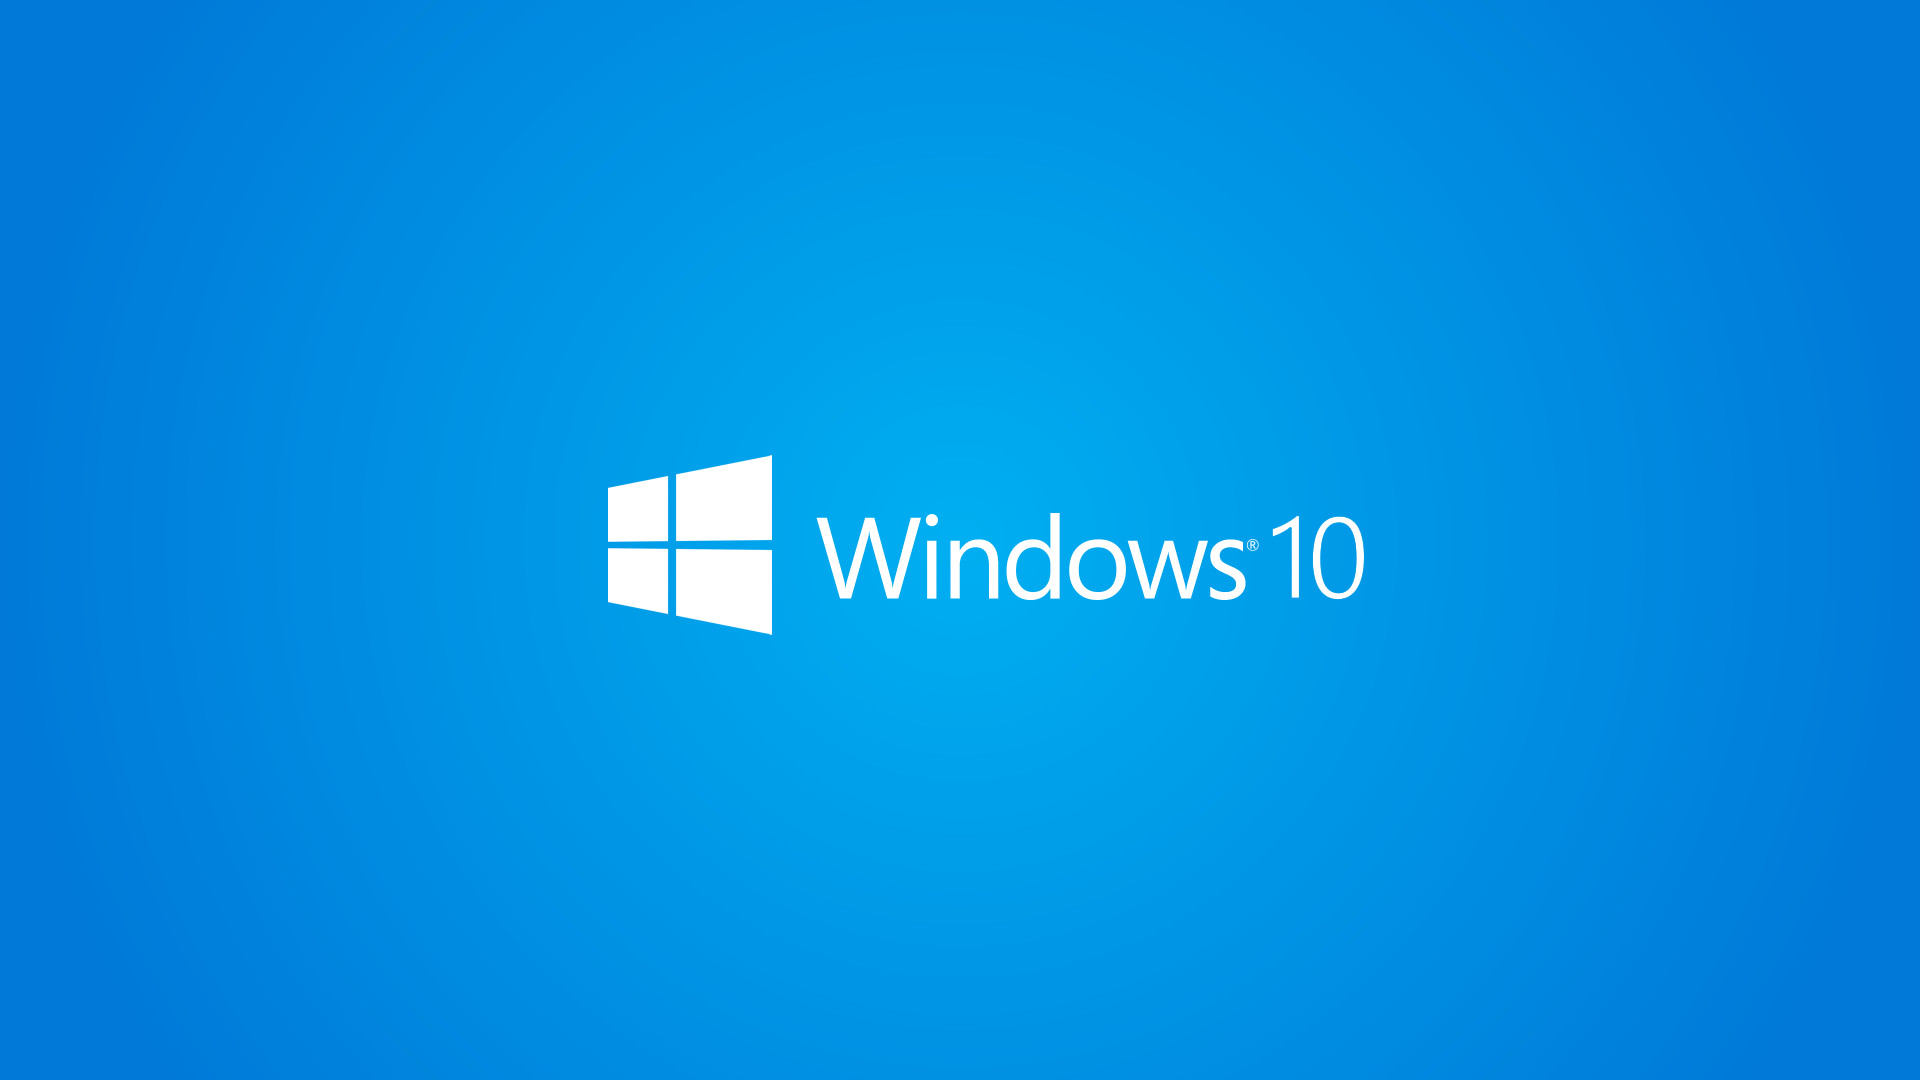 Windows 10 Wallpaper 1080p Full Hd White Logo Blue - Mobile App , HD Wallpaper & Backgrounds